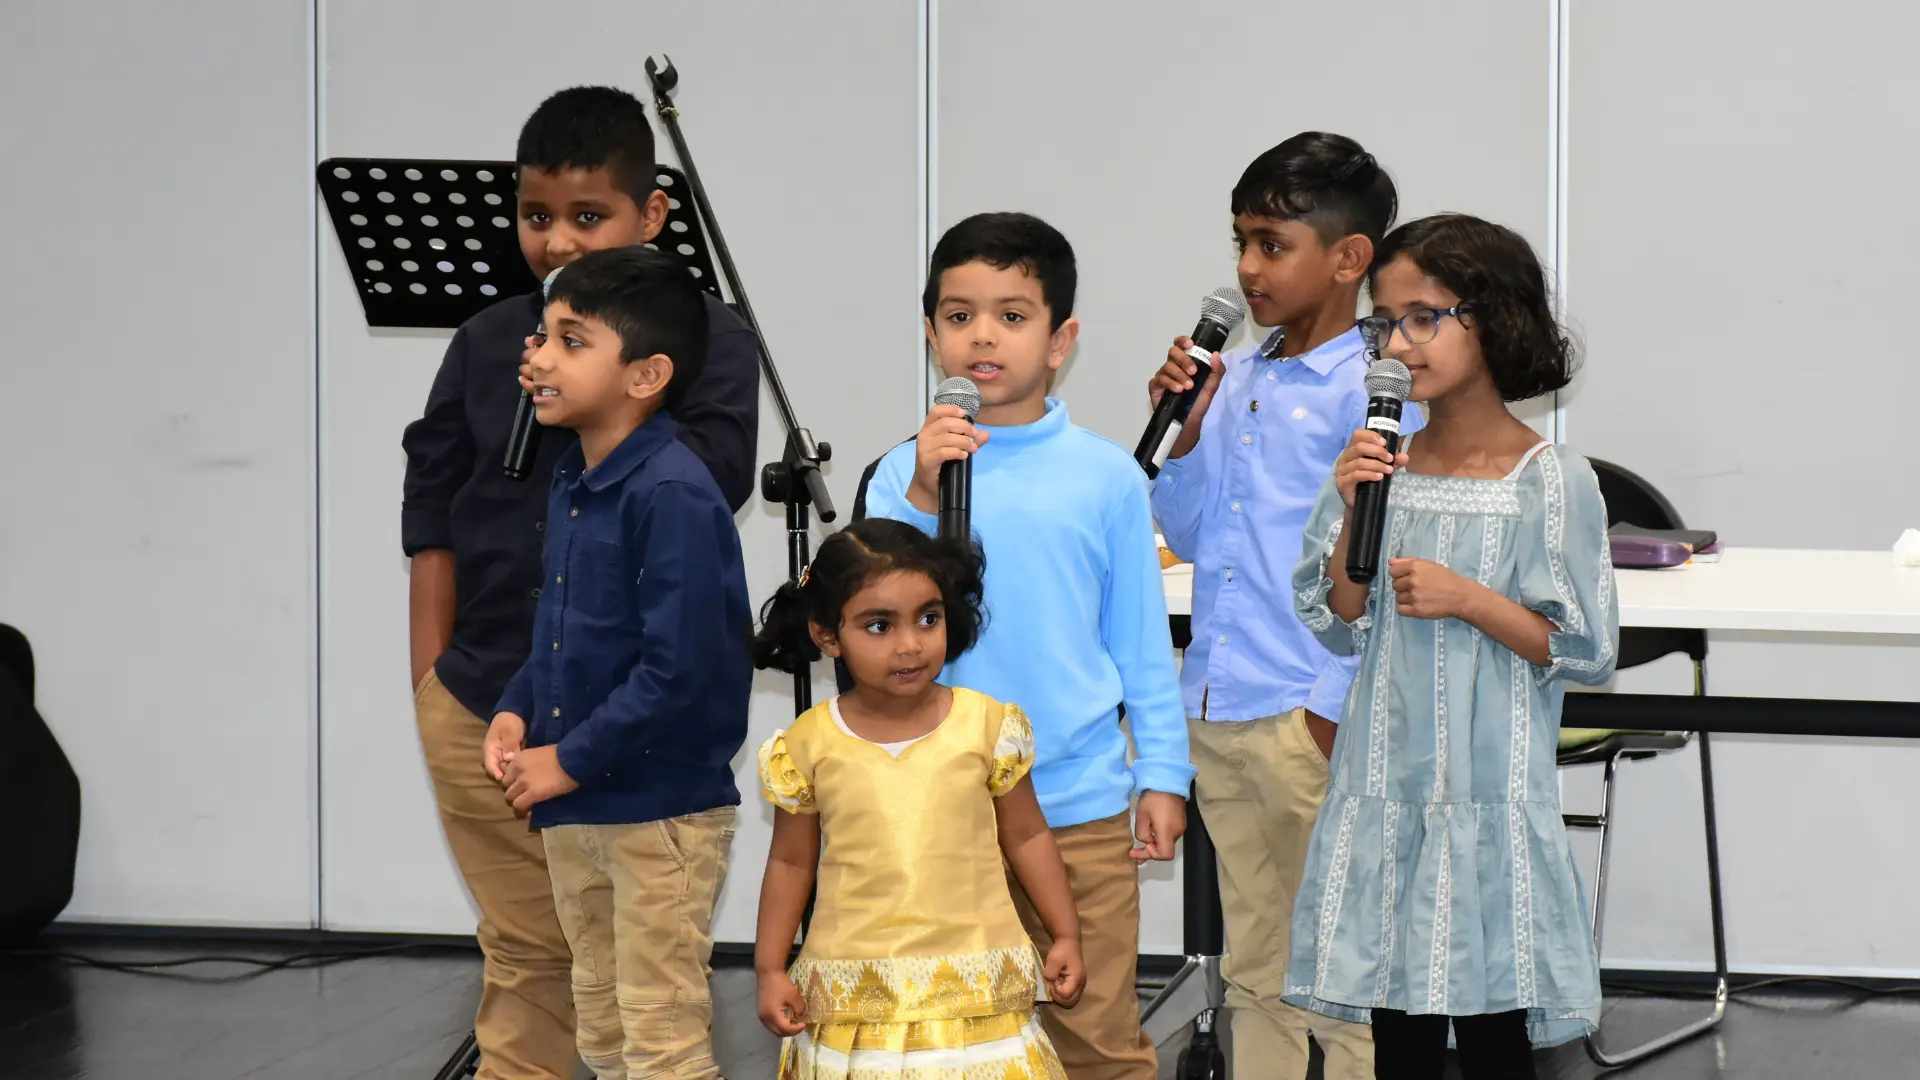 Kids Singing in Philadelphia Church